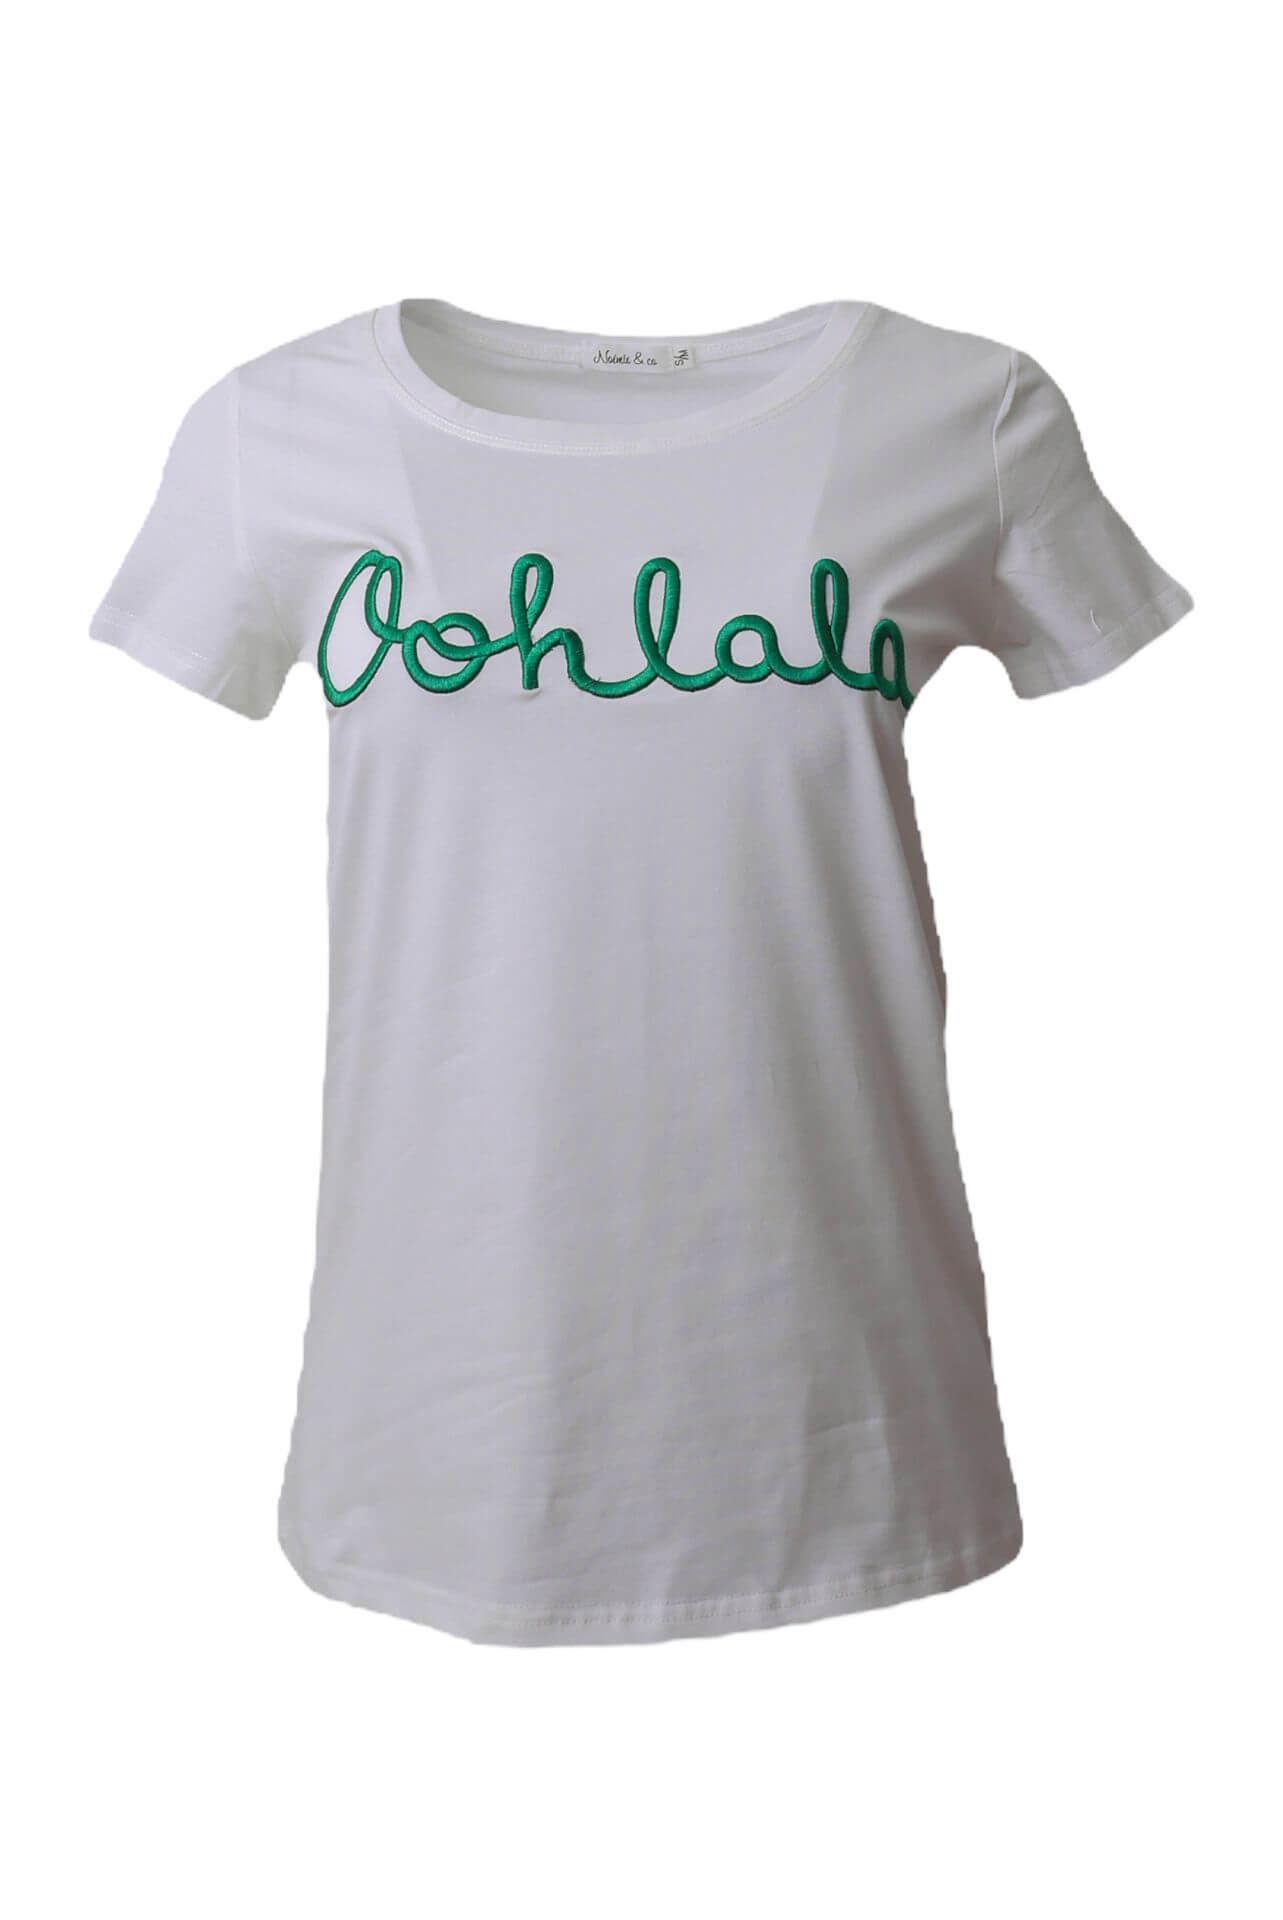 T-Shirt Oohlala